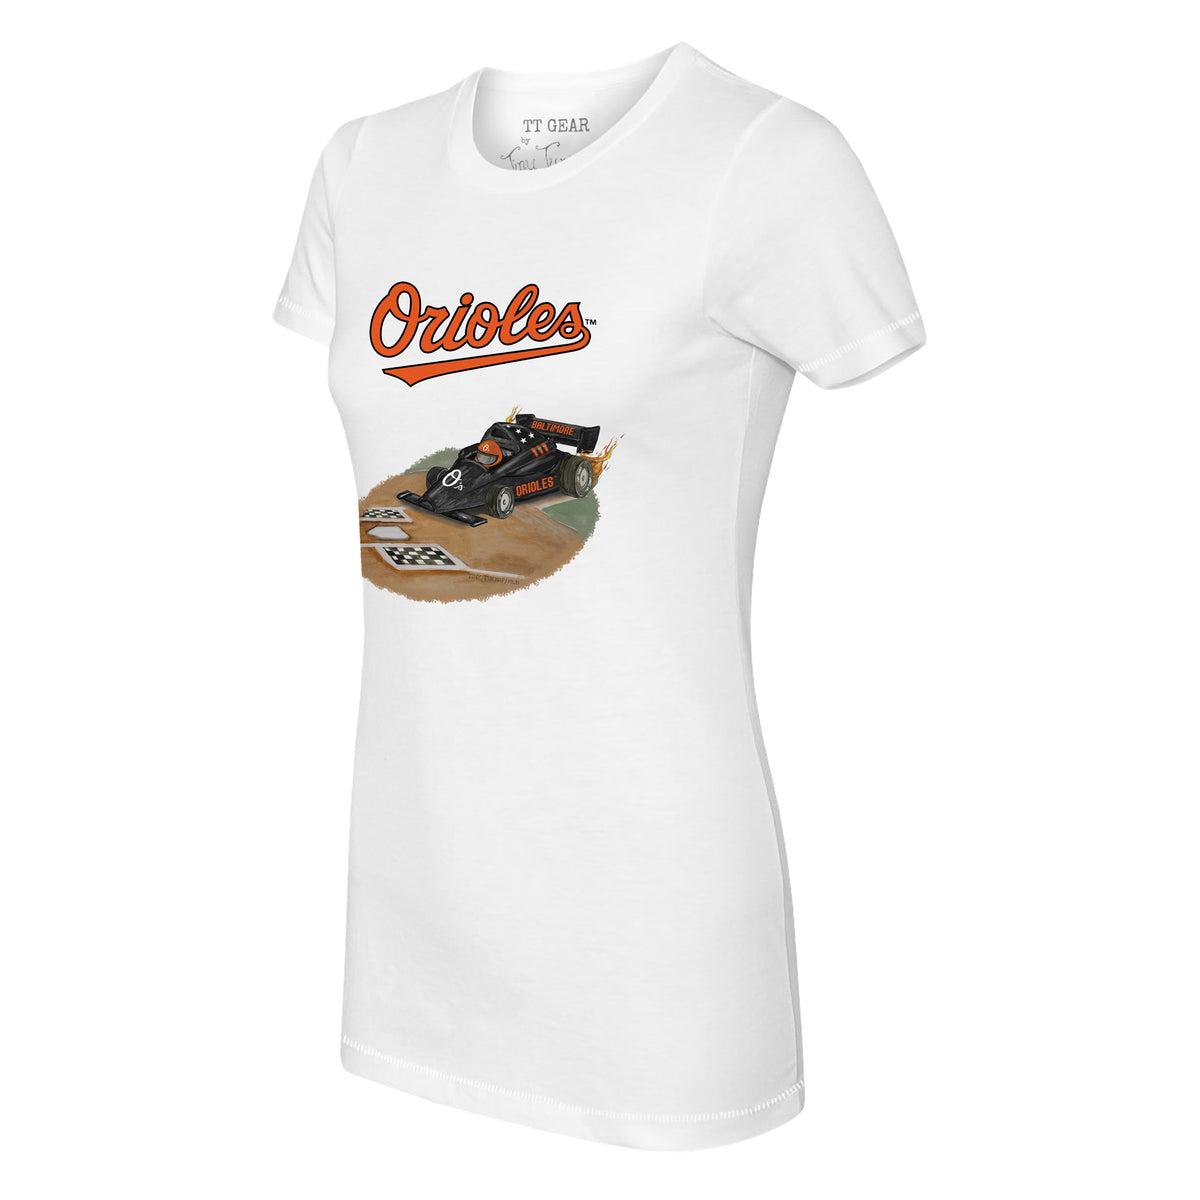 Baltimore Orioles Race Car Tee Shirt